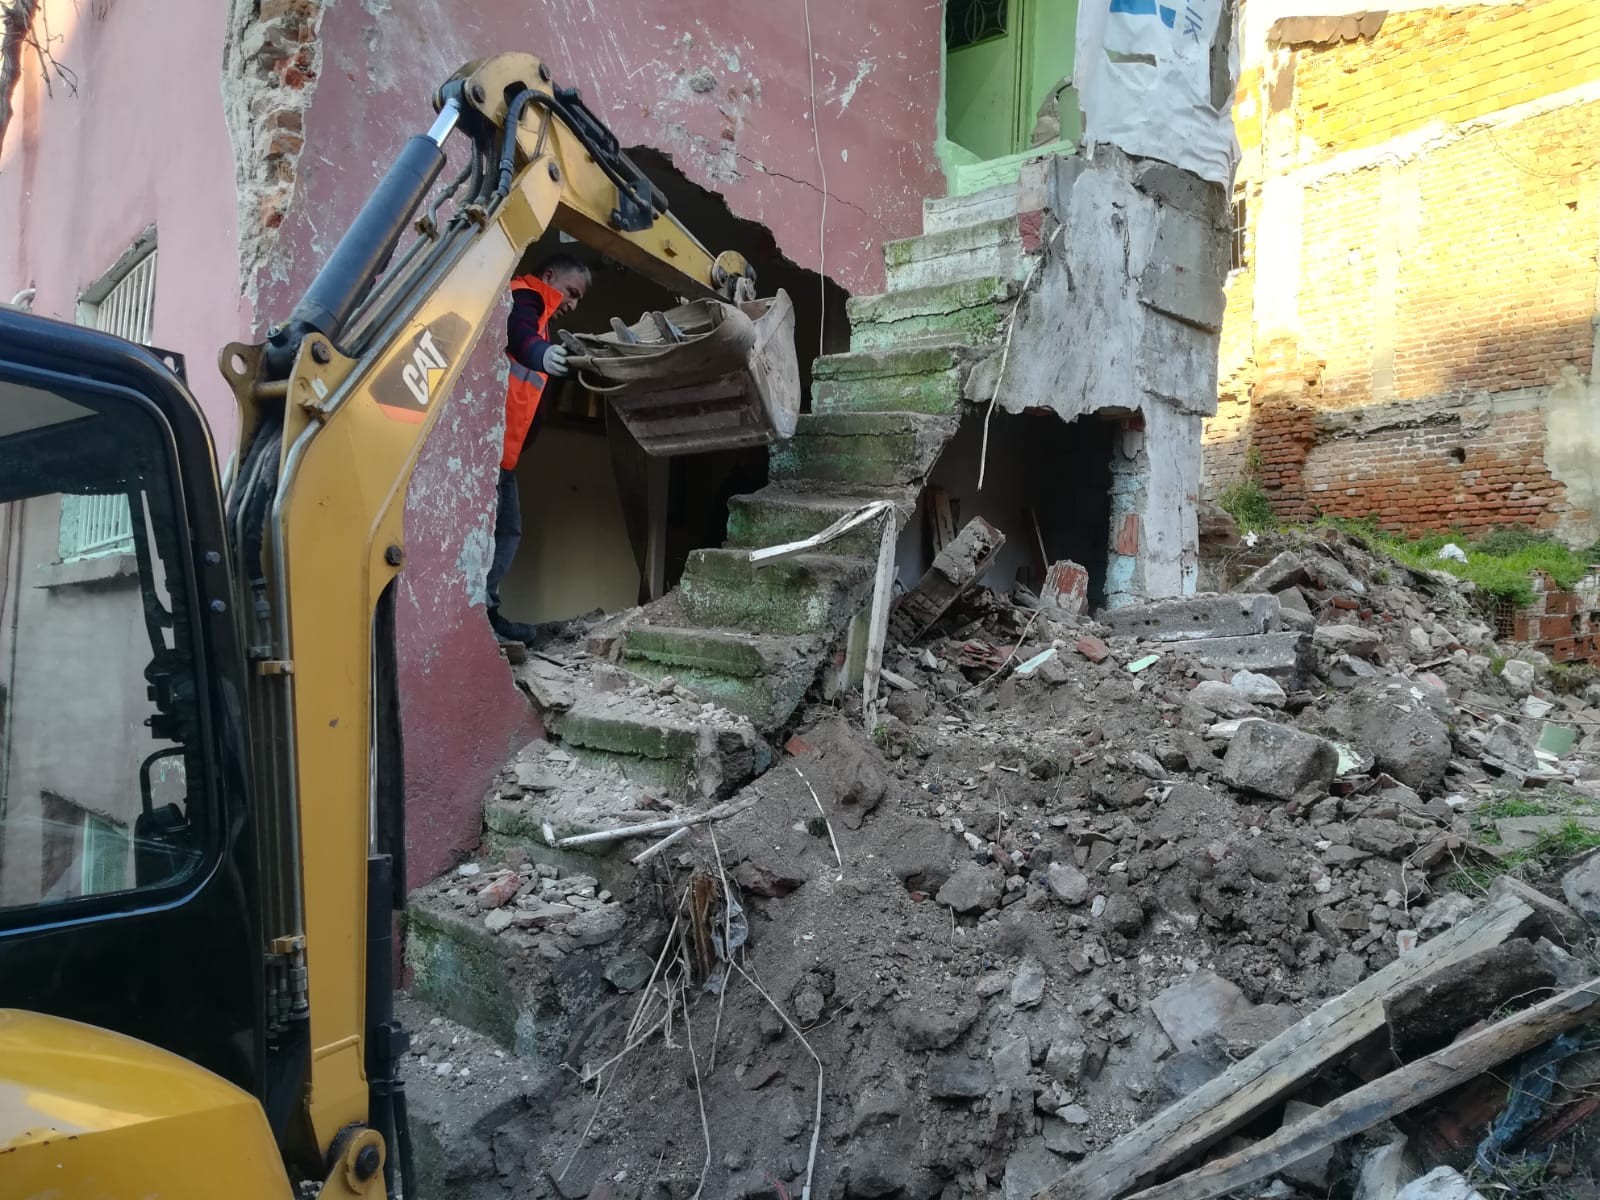 İzmir’de metruk sinagogdan kopan taş parçaları evin duvarını yıktı: 1 yaralı